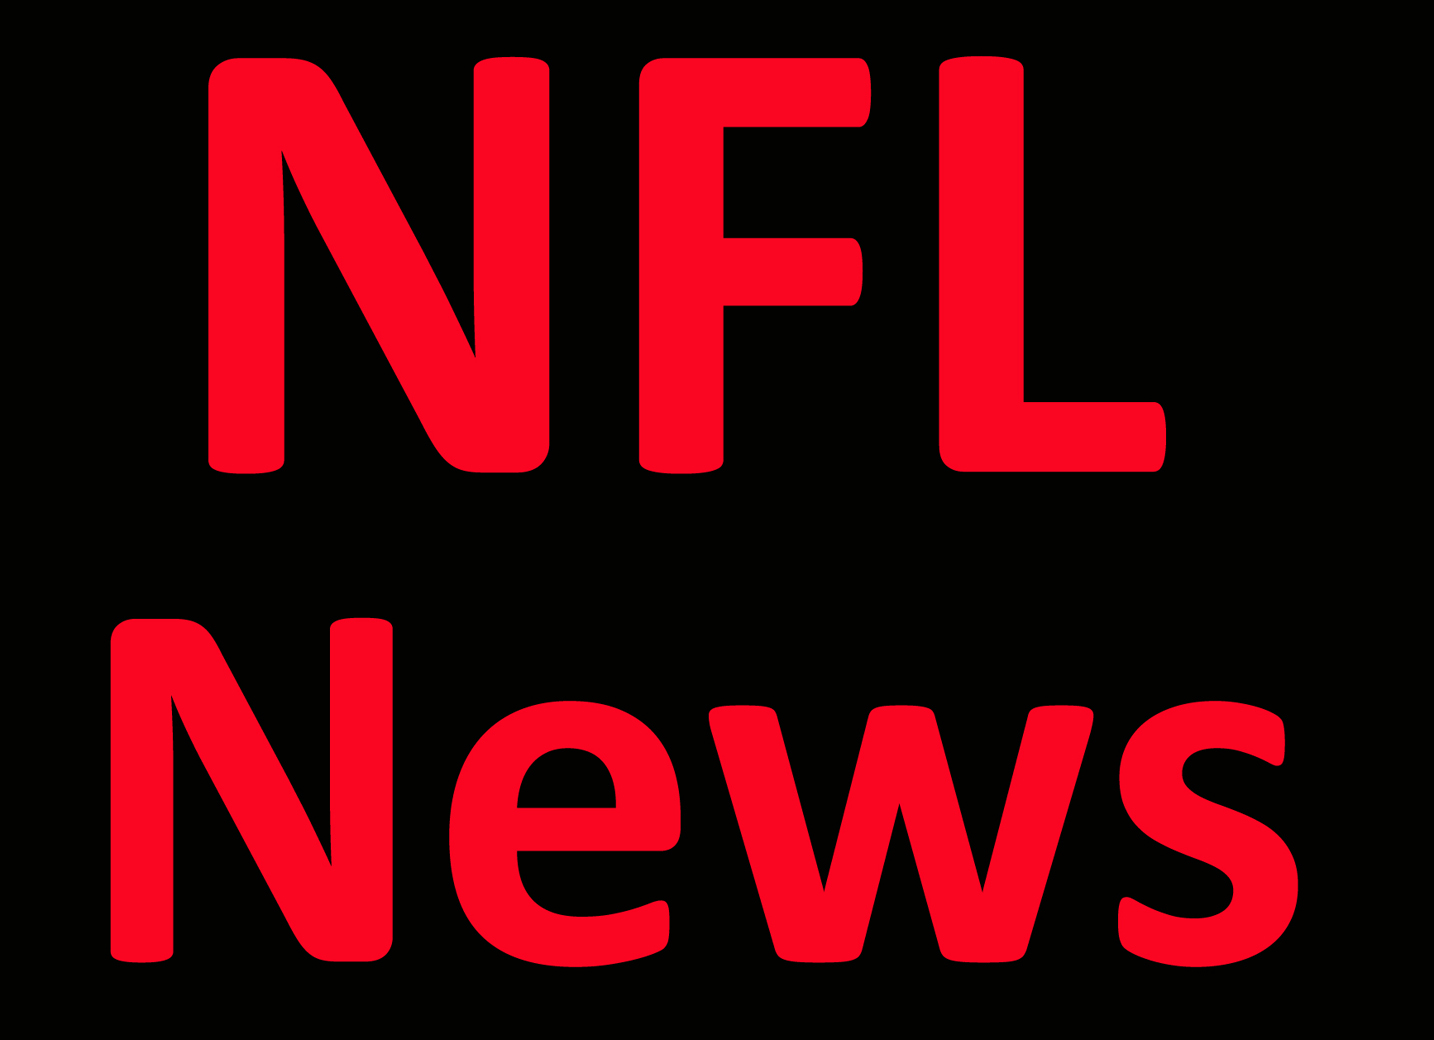 NFL News: Raiders’ Waller, seeking deal, hires new agents Per Report